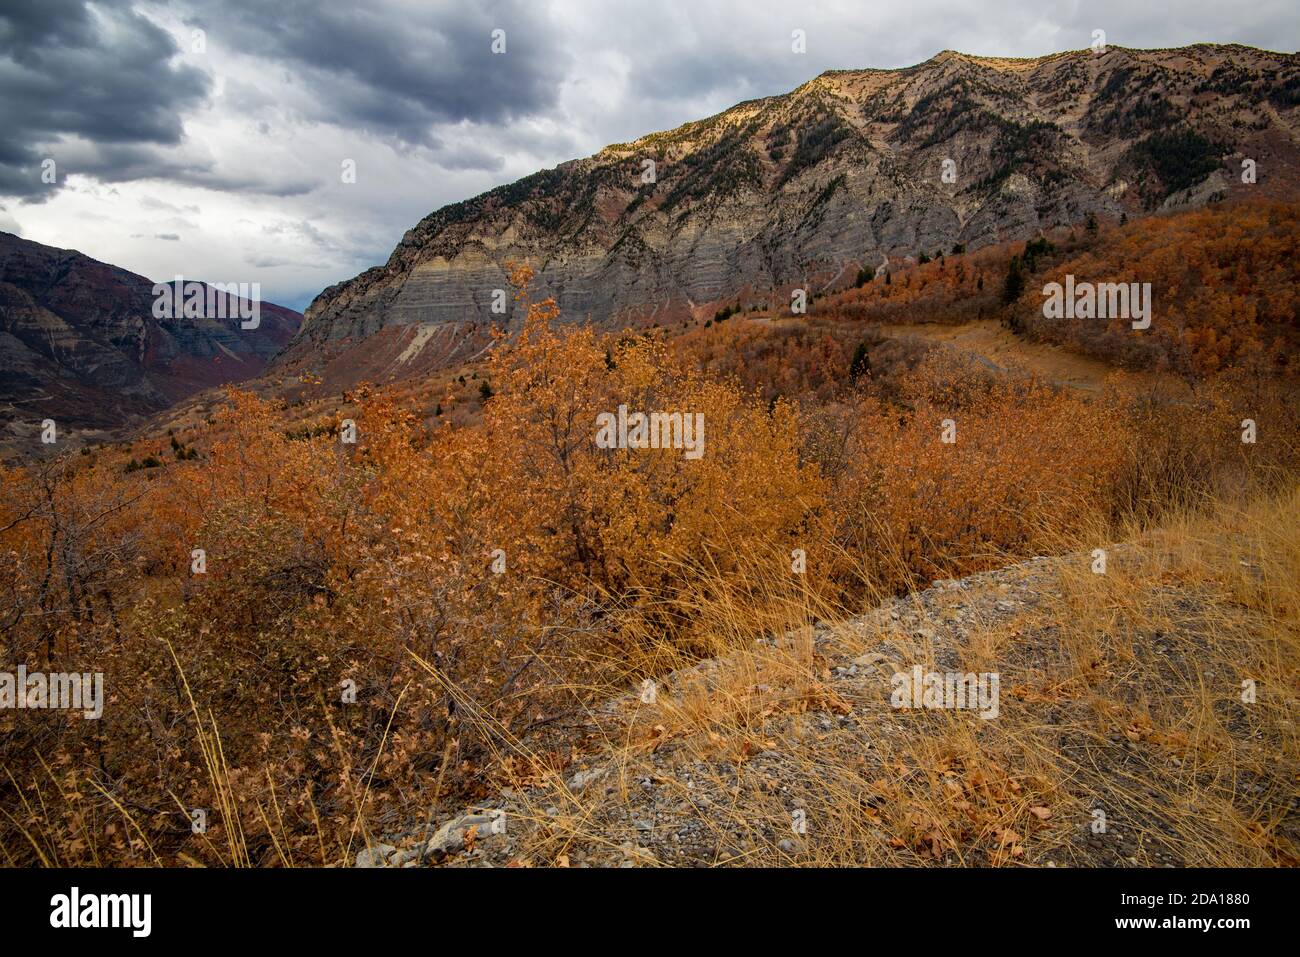 Le alte vette di granito e le scogliere dello Utah settentrionale, USA, sono spettacolari in autunno. La strada di montagna offre infinite vedute panoramiche della catena montuosa. Foto Stock